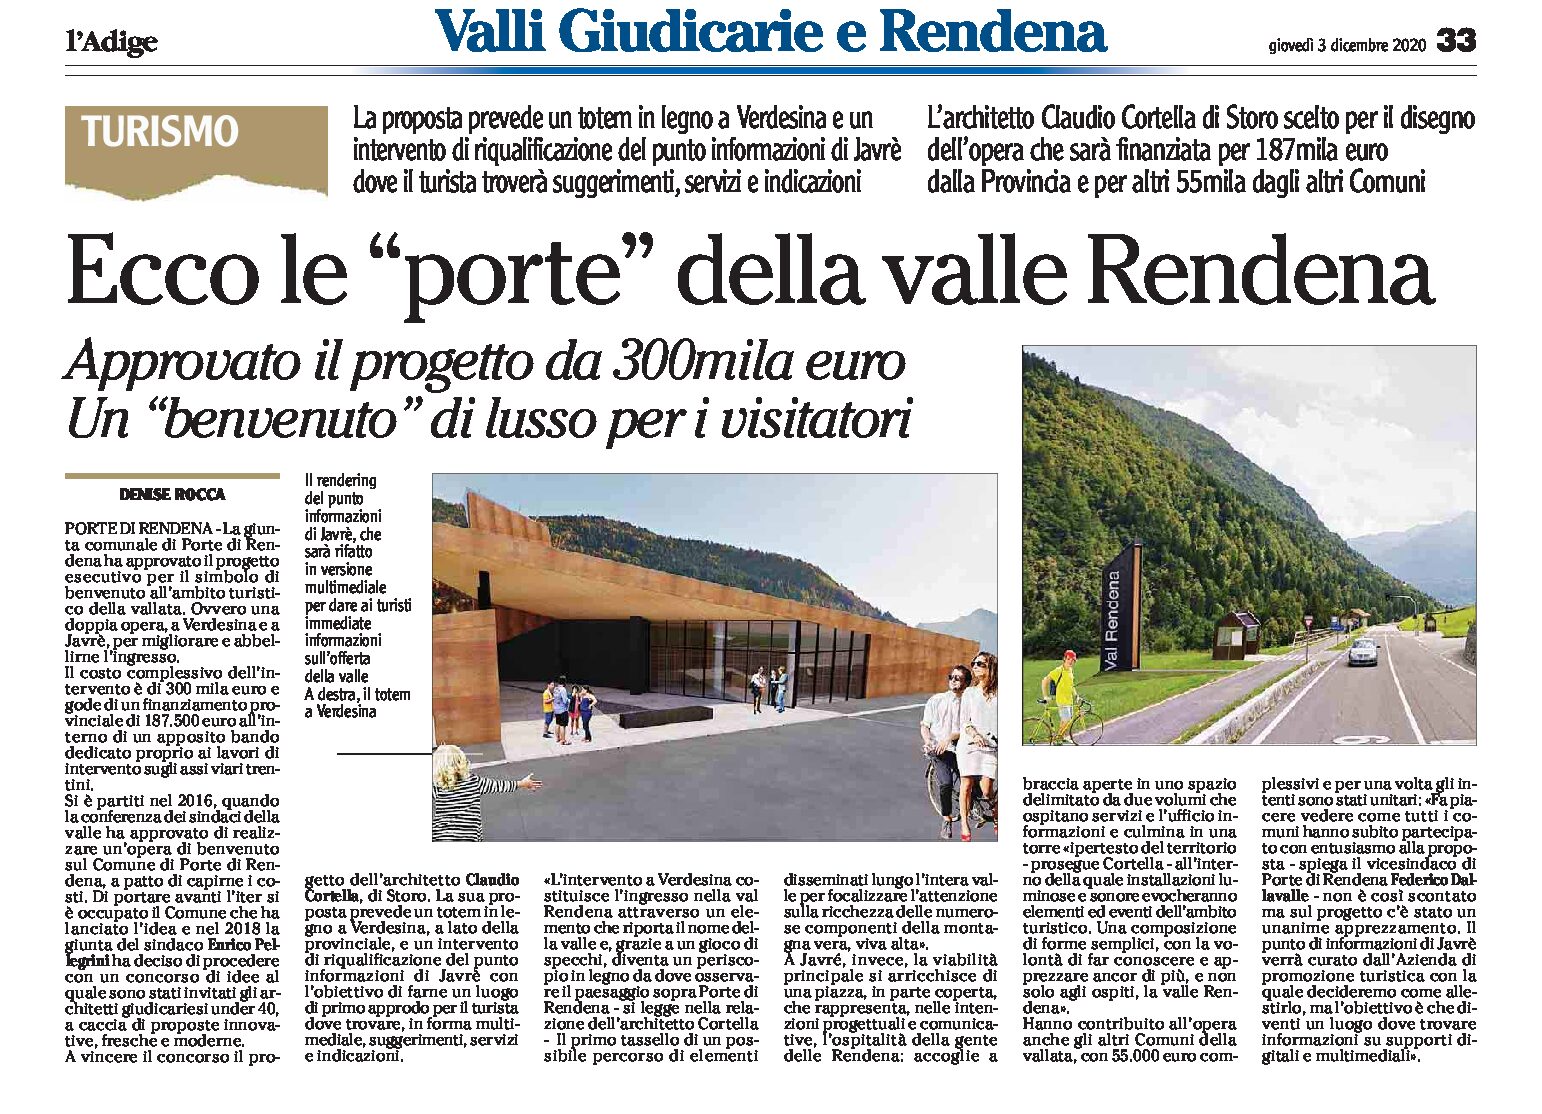 Porte di Rendena: approvato il progetto esecutivo per il benvenuto ai turisti nella valle